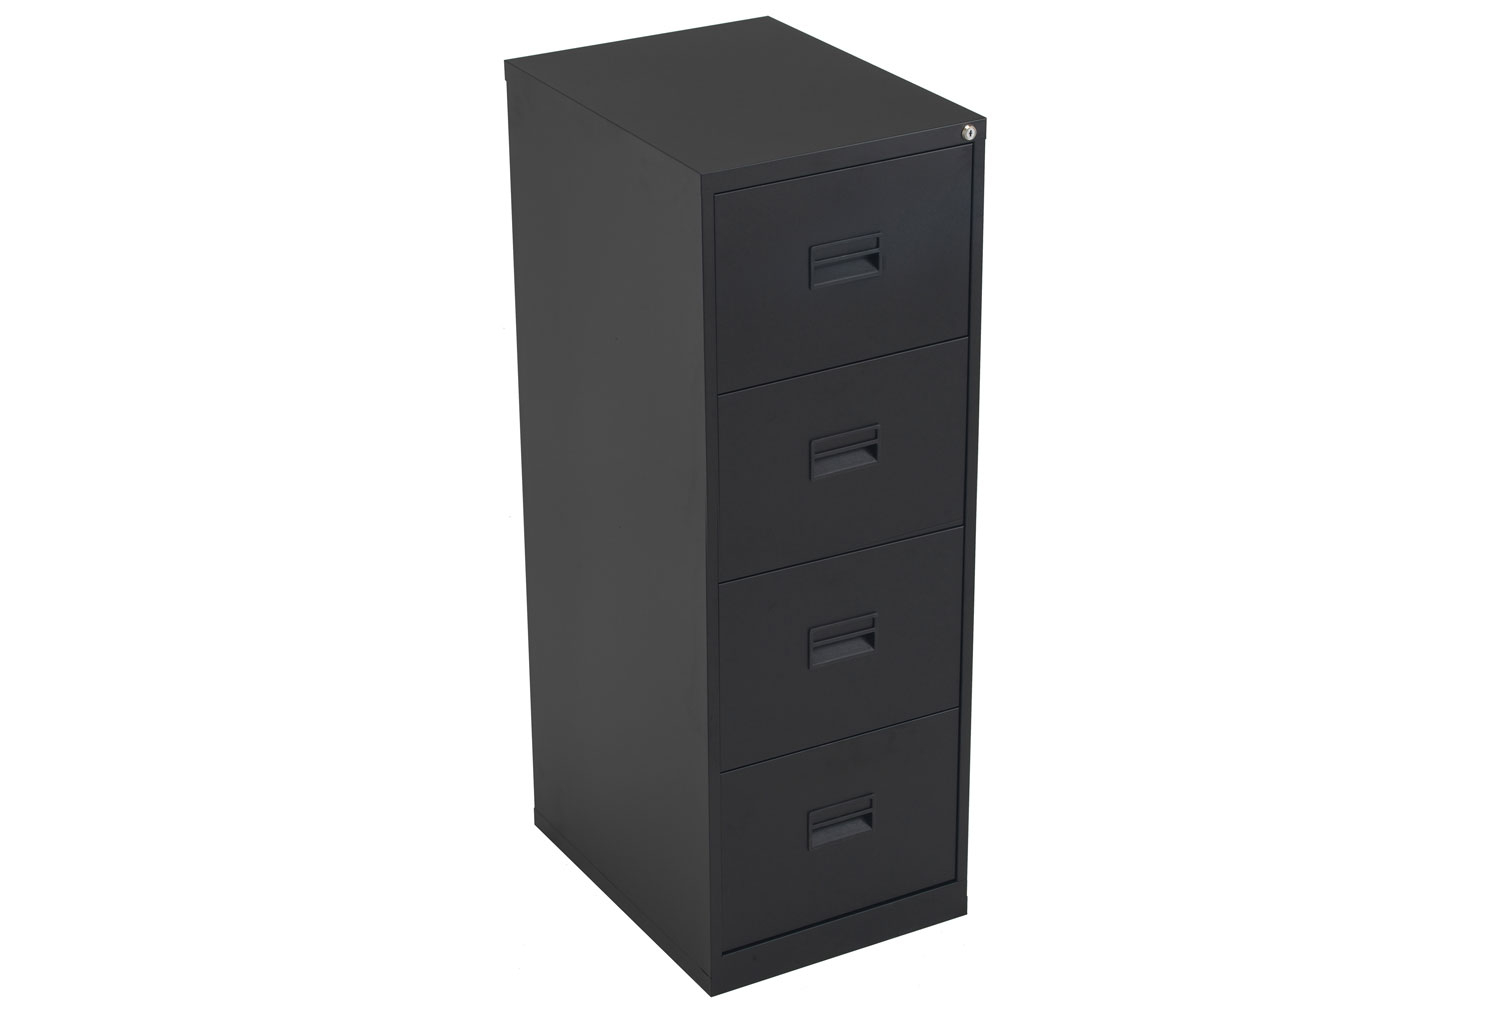 Value Line Metal Filing Cabinet, 4 Drawer - 47wx62dx130h (cm), Black, Express Delivery